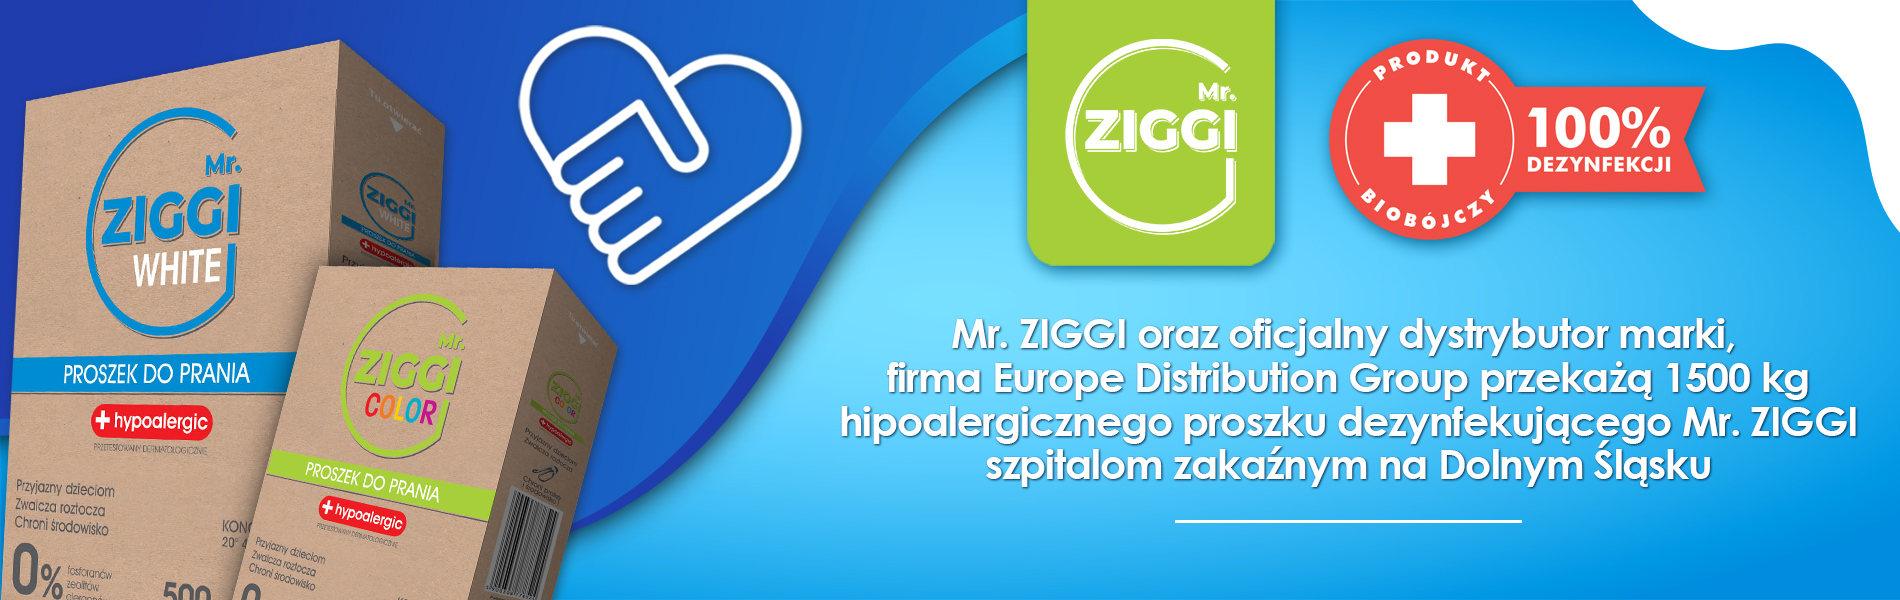 Proszek dezynfekujący przekazany do szpitali przez firmę Europe Distribution Group - produkty Mr. ZIGGI